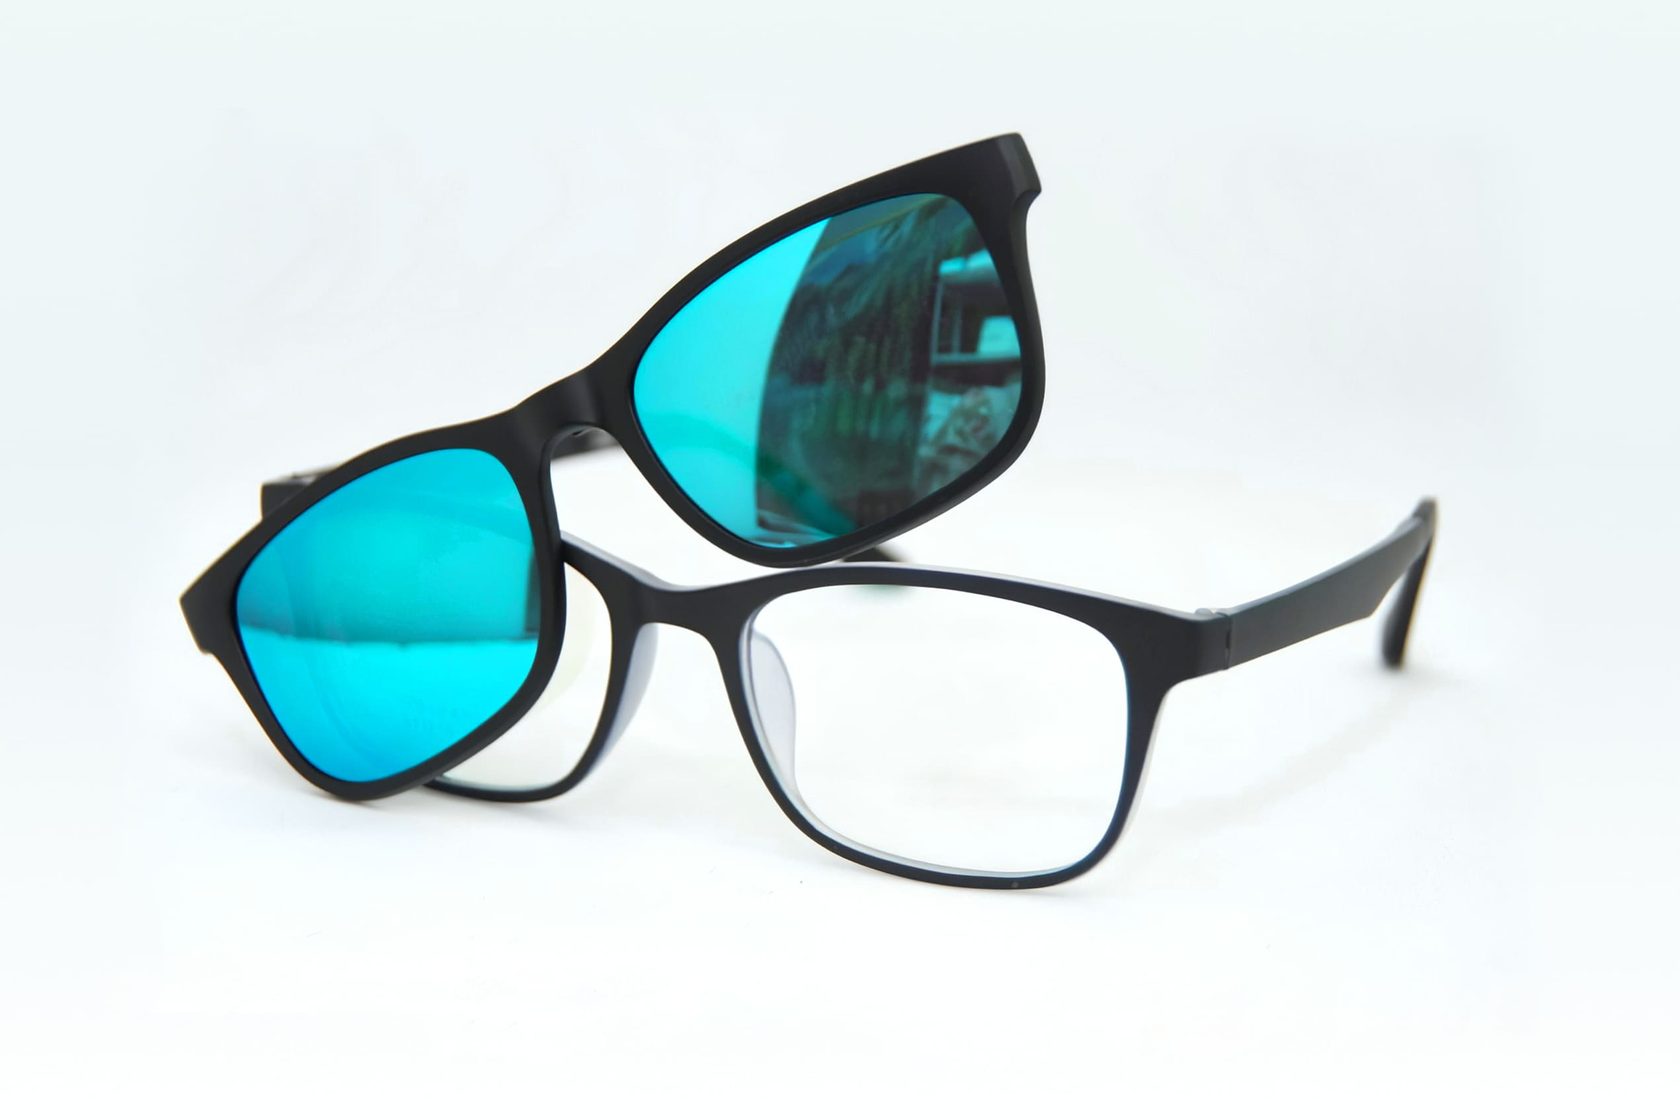 Очки с откидными стеклами солнцезащитные - стильный аксессуар для защиты глаз от яркого солнца